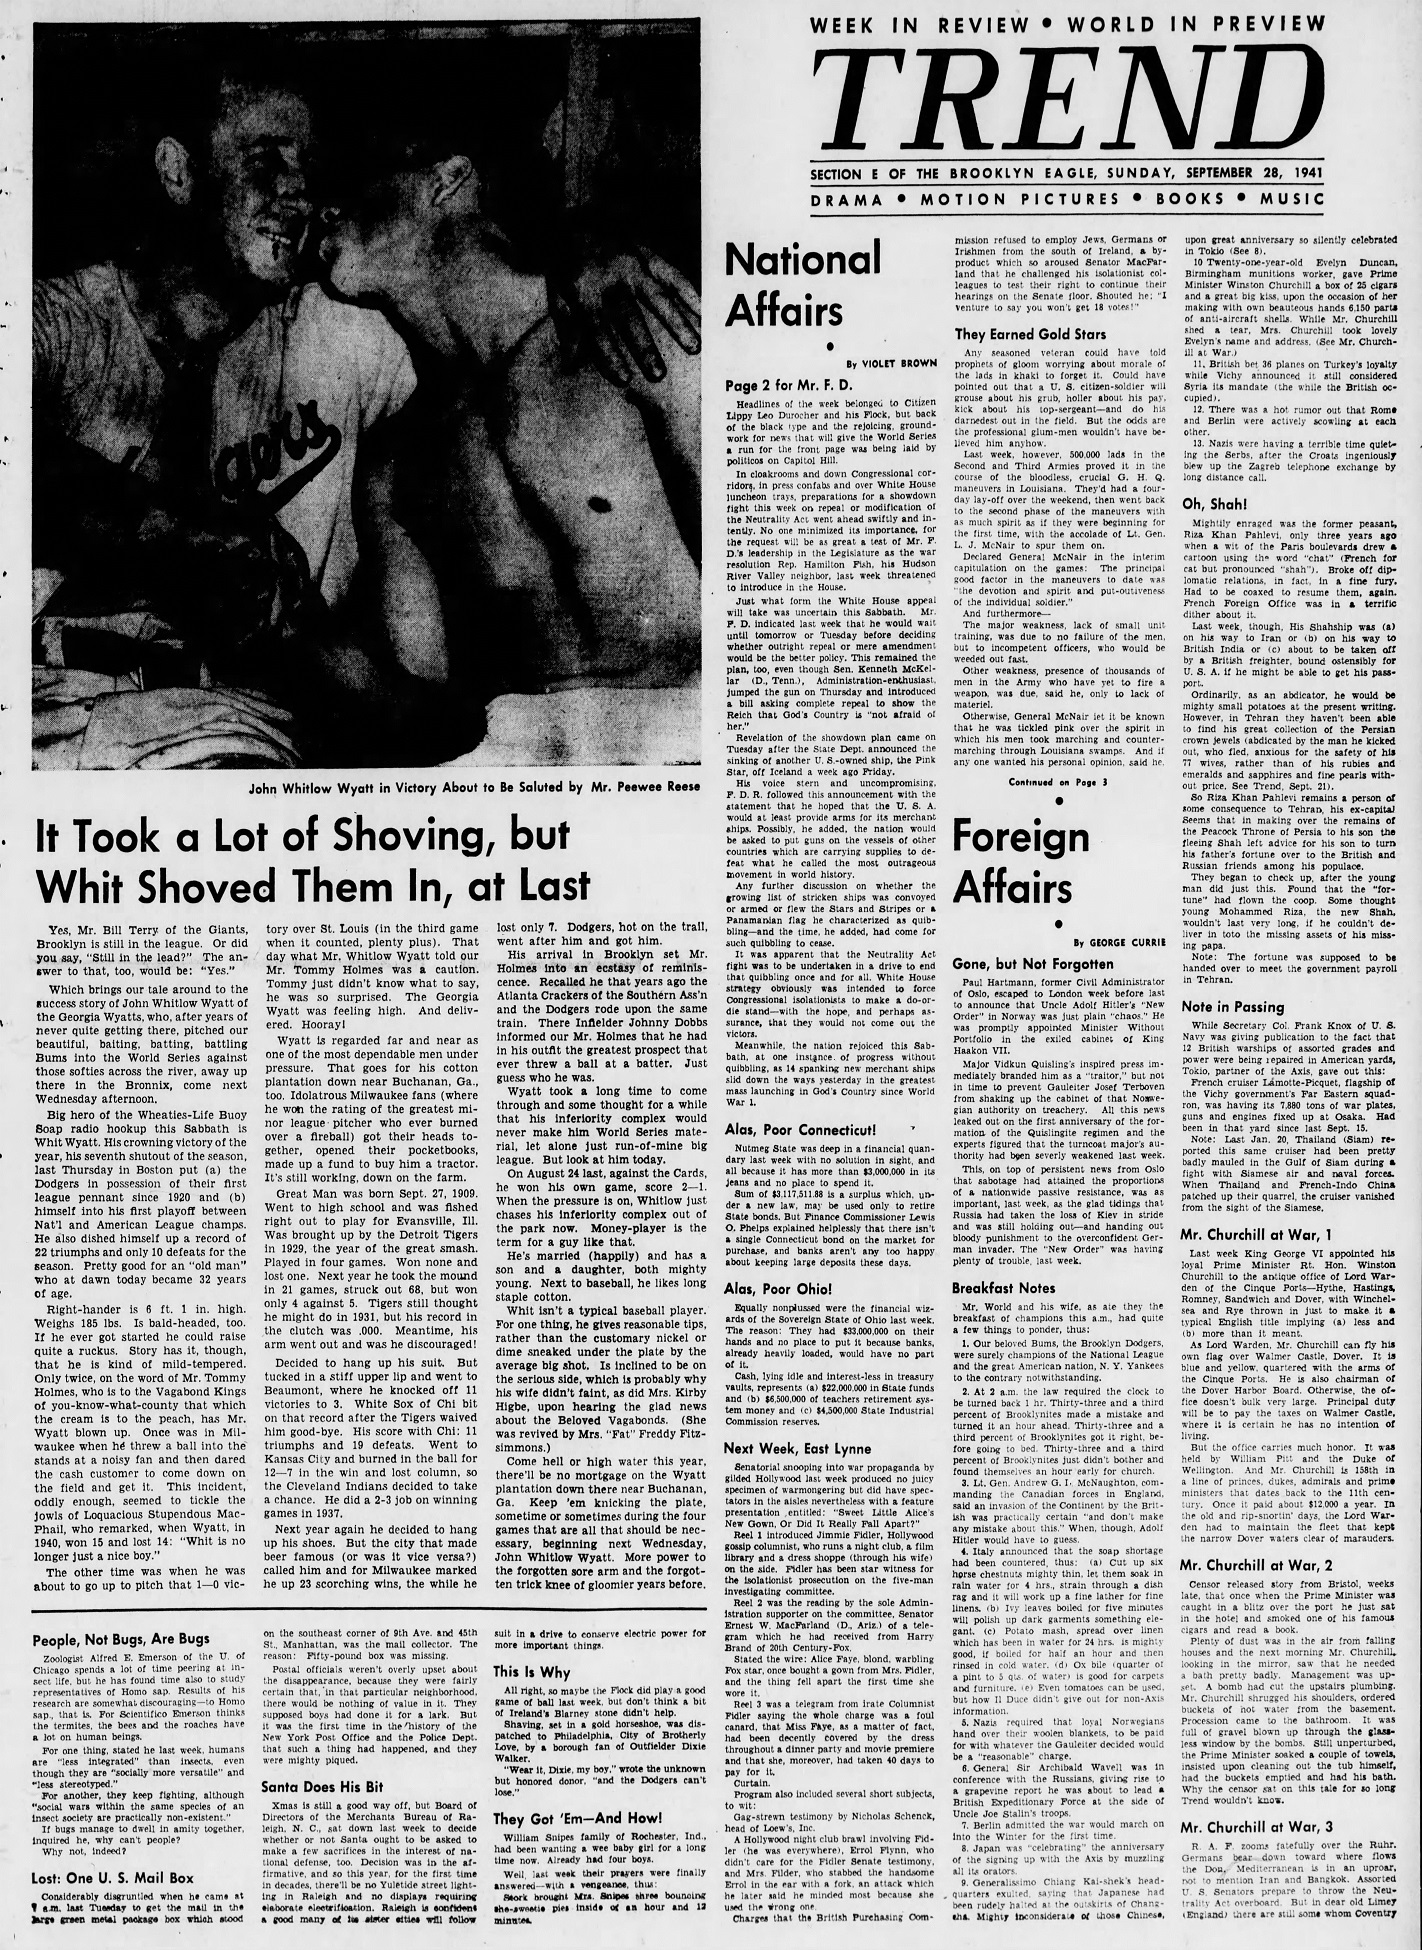 The_Brooklyn_Daily_Eagle_Sun__Sep_28__1941_(3).jpg